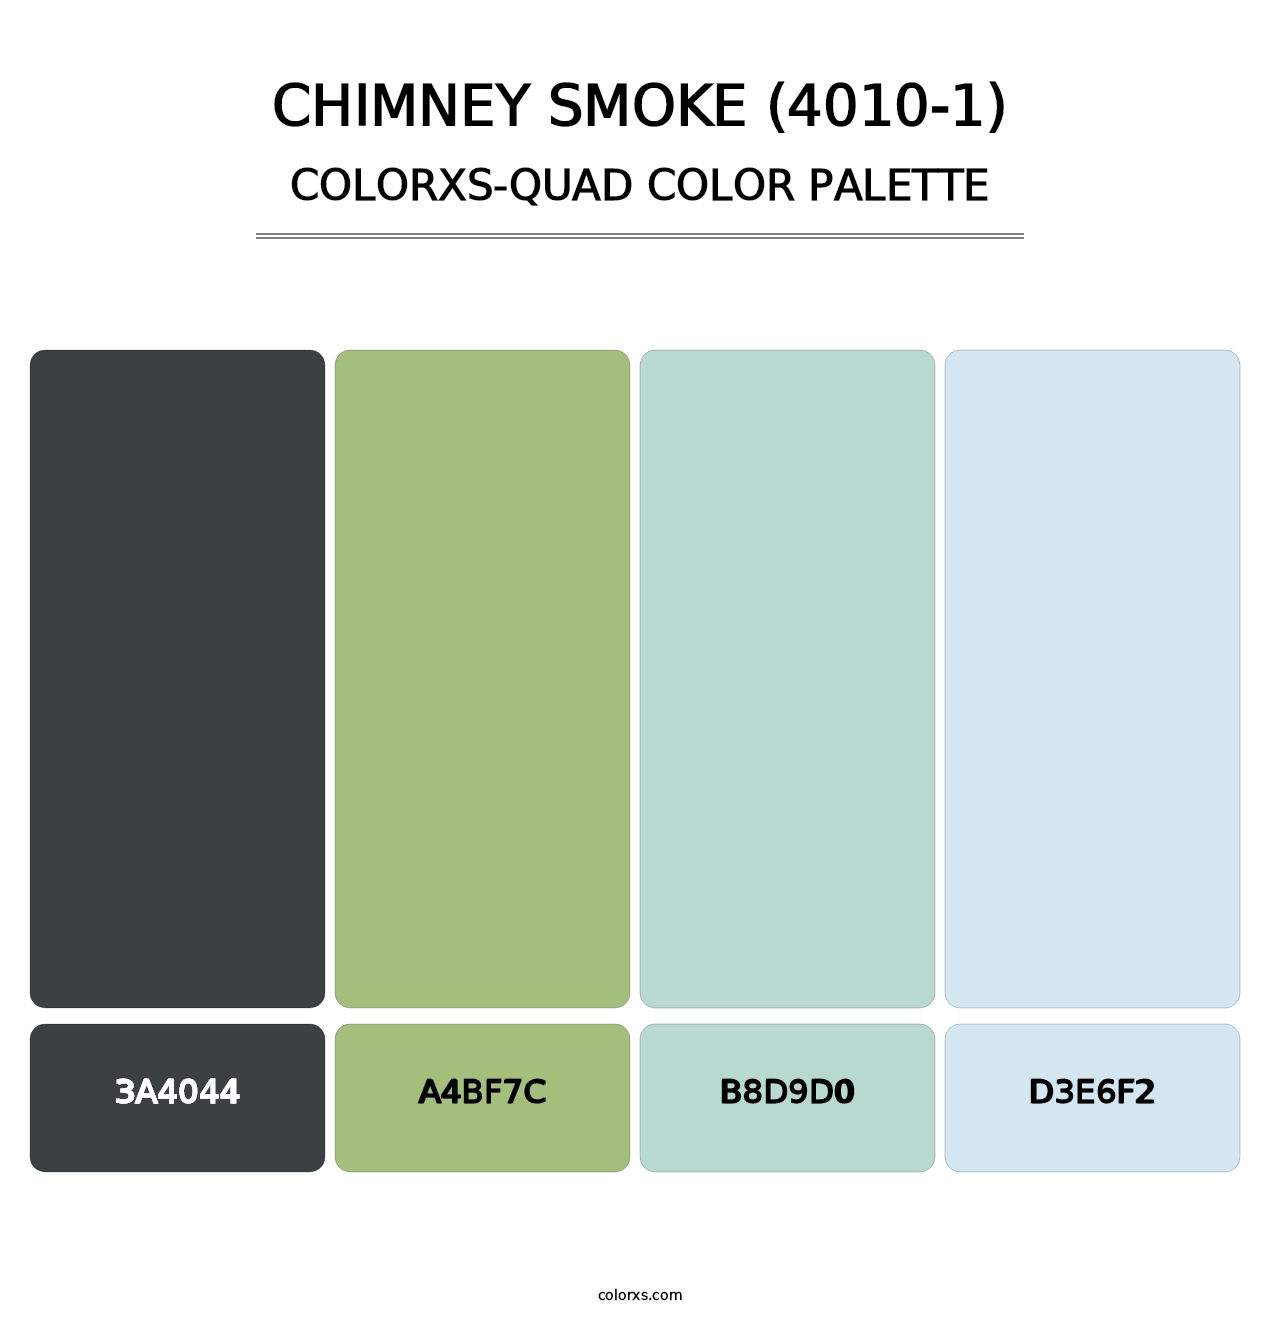 Chimney Smoke (4010-1) - Colorxs Quad Palette